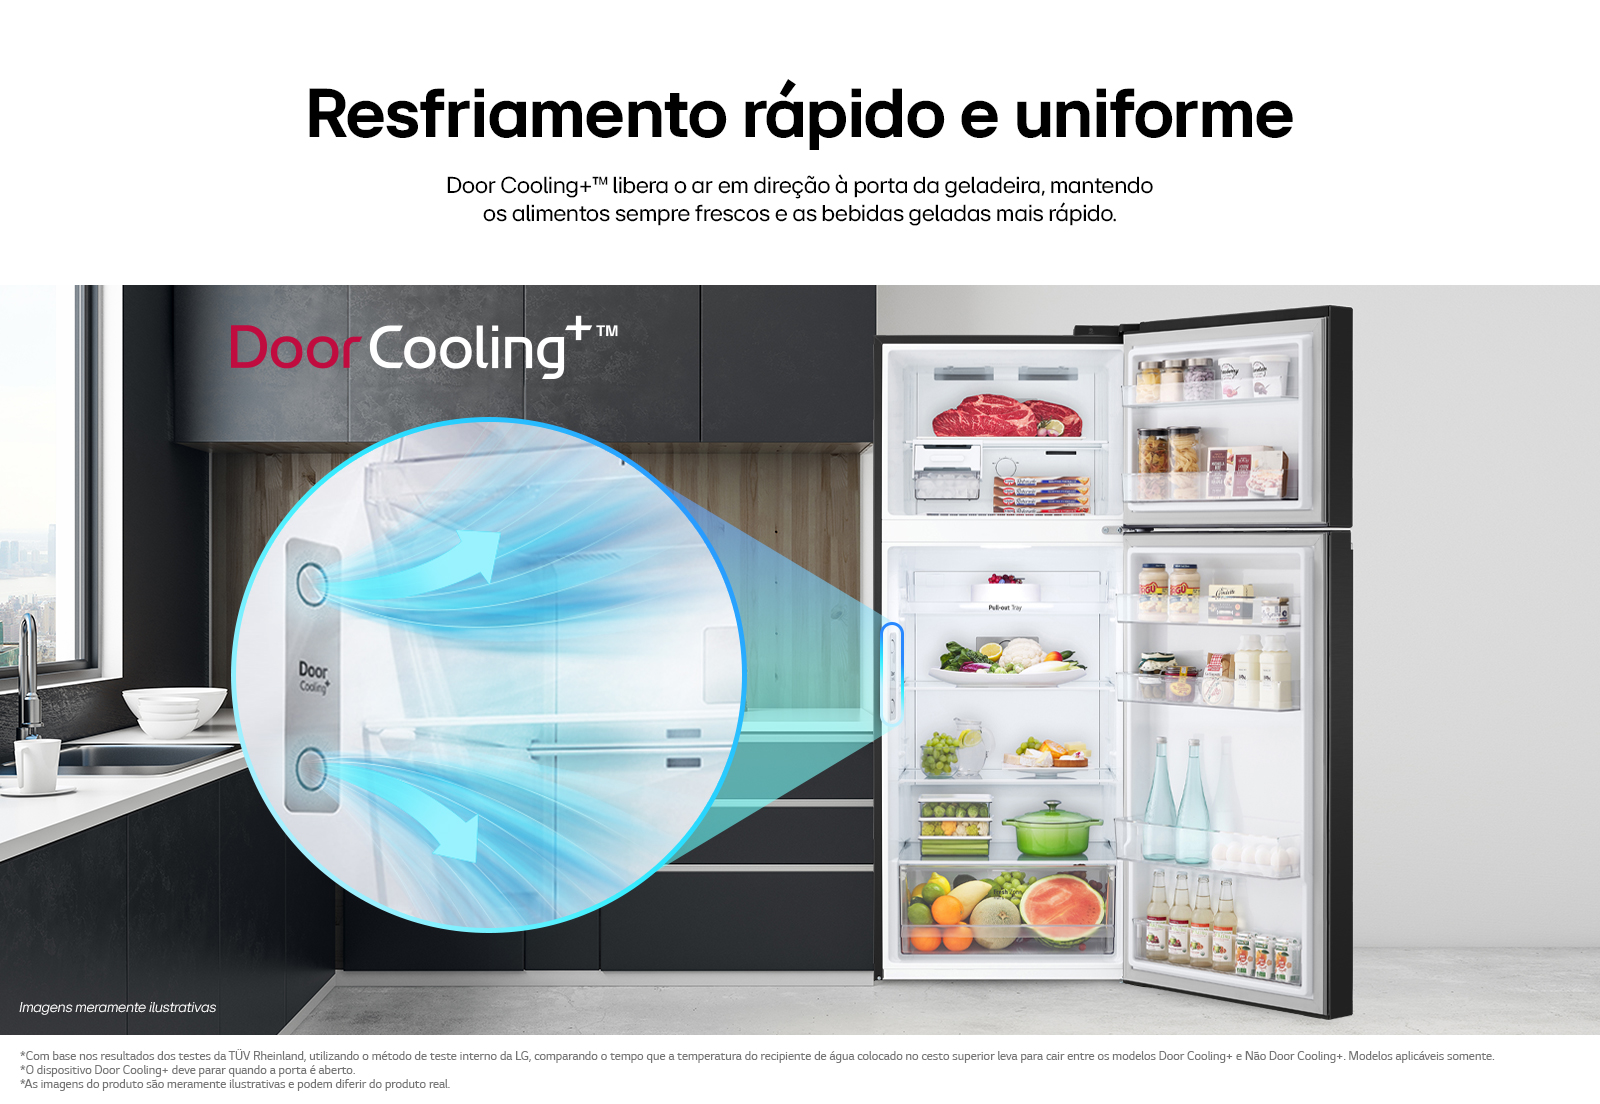 Ilustração da circulação do ar dentro da geladeira garantindo a refrescancia e qualidade dos alimentos